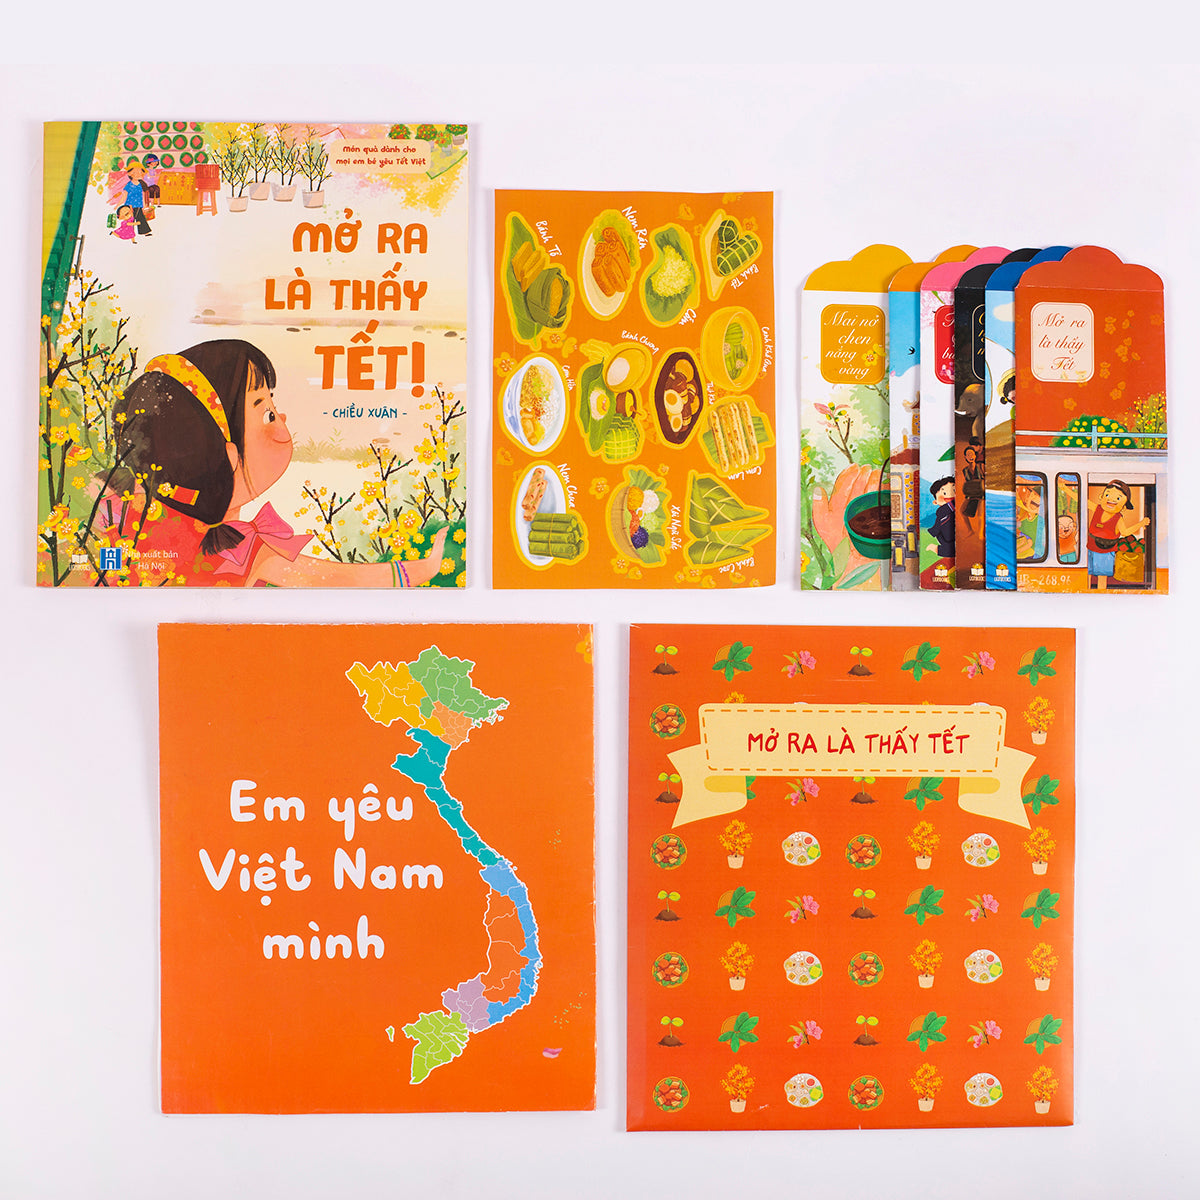 Bilingual Boxset: Bộ sách Mở Ra là Thấy Tết + Bầu Cua Tôm Cá game - child-friendly version with 3 paper dice